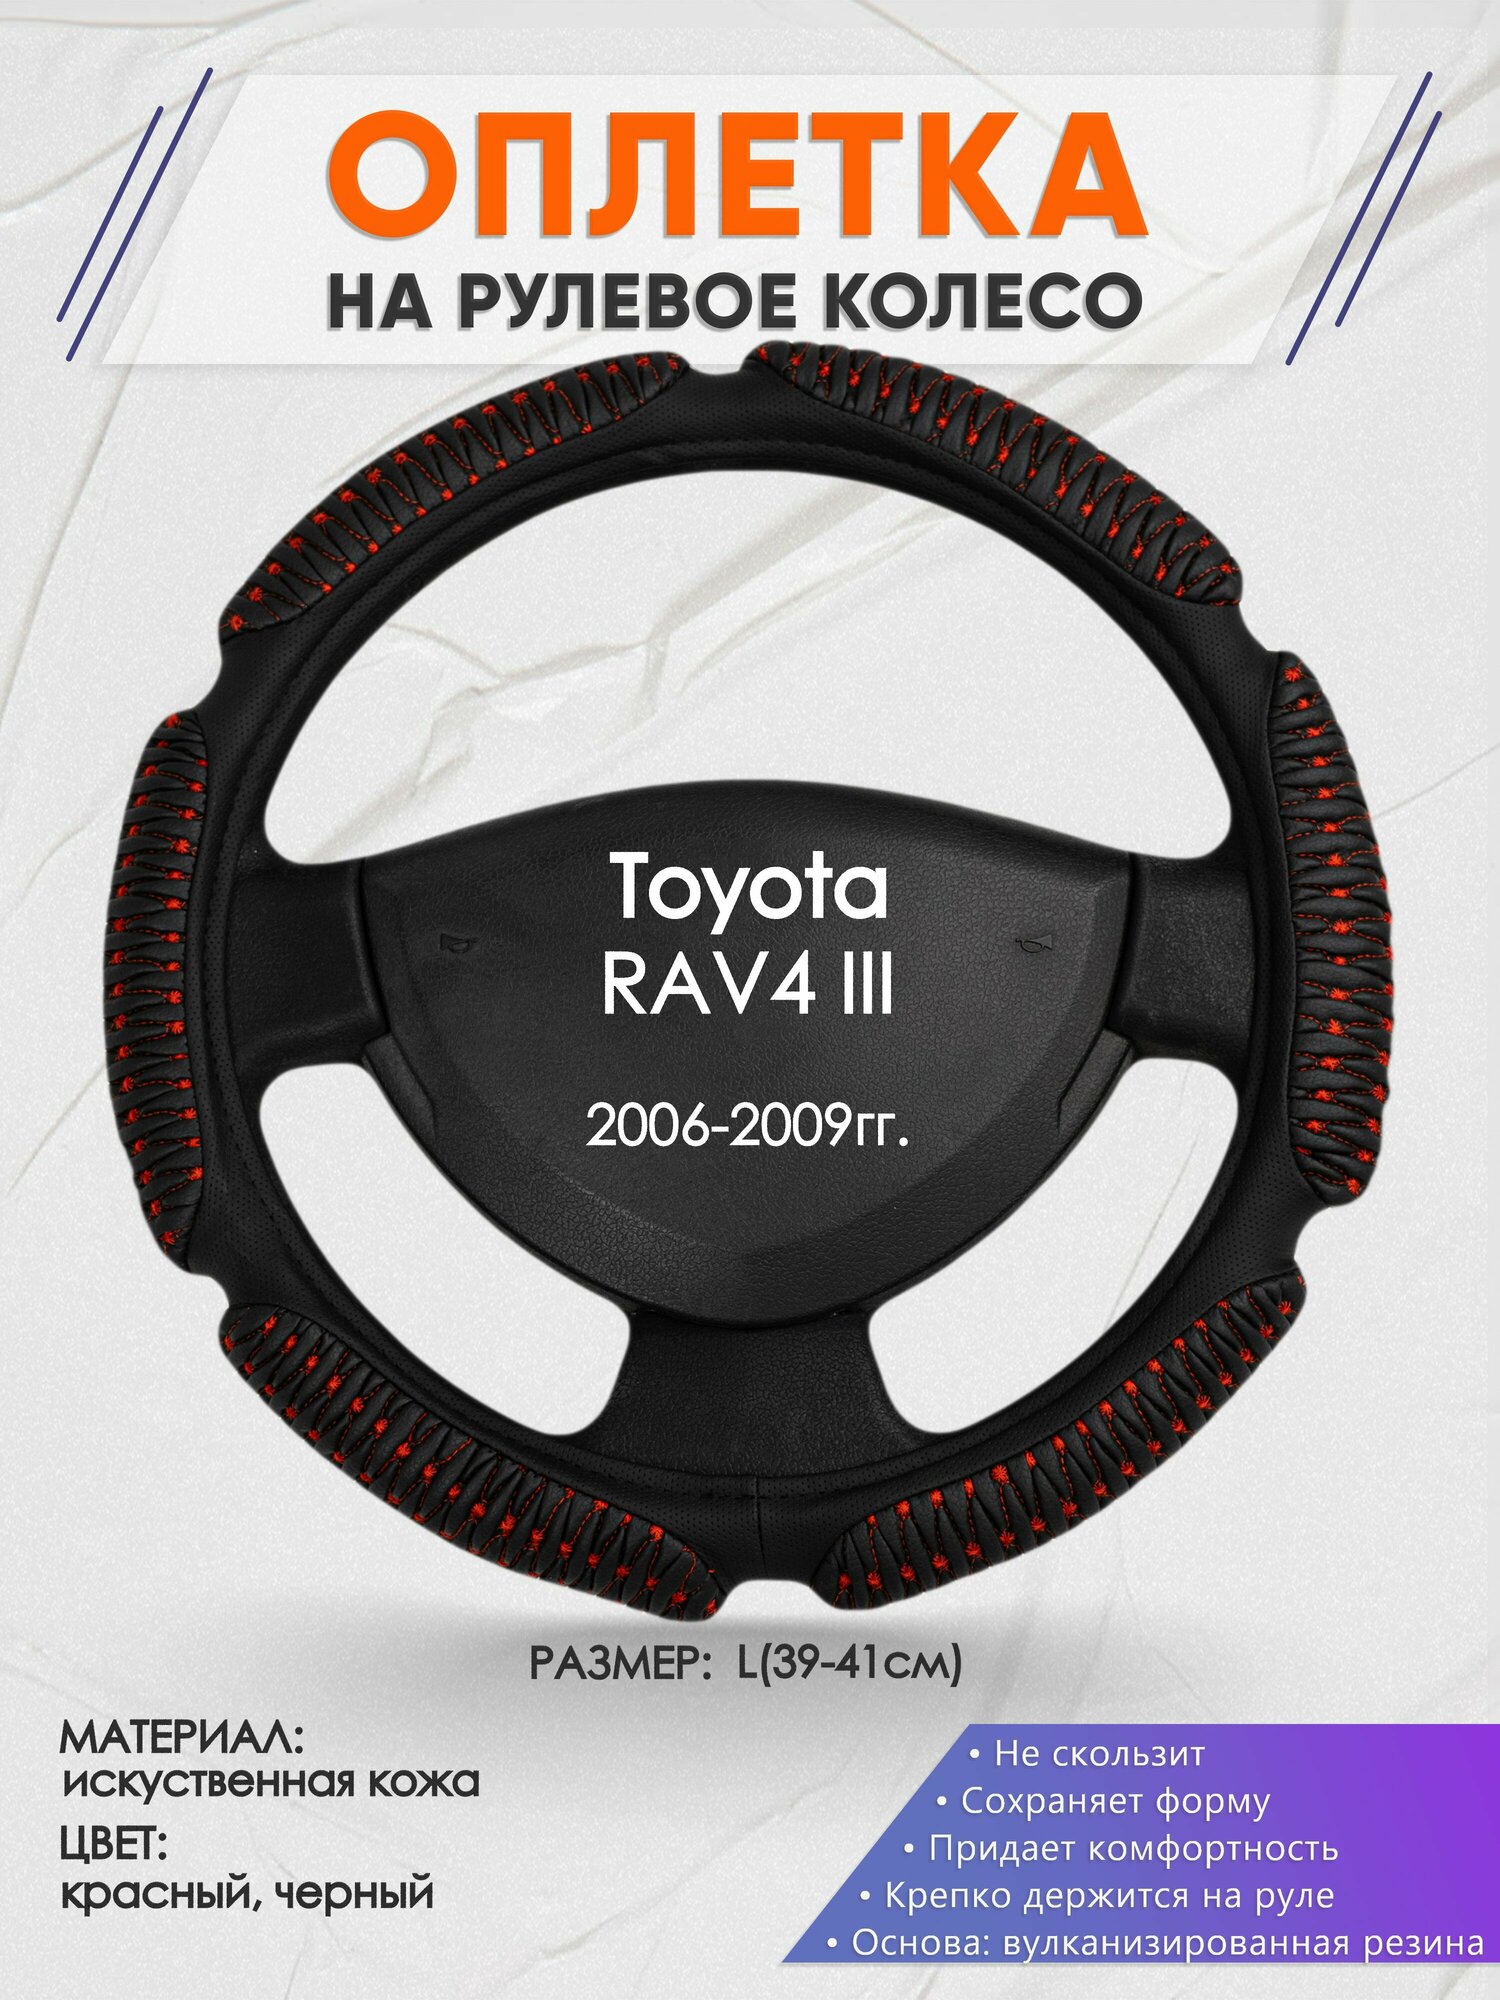 Оплетка на руль для Toyota RAV4 3(Тойота Рав 4) 2006-2009, L(39-41см), Искусственная кожа 01